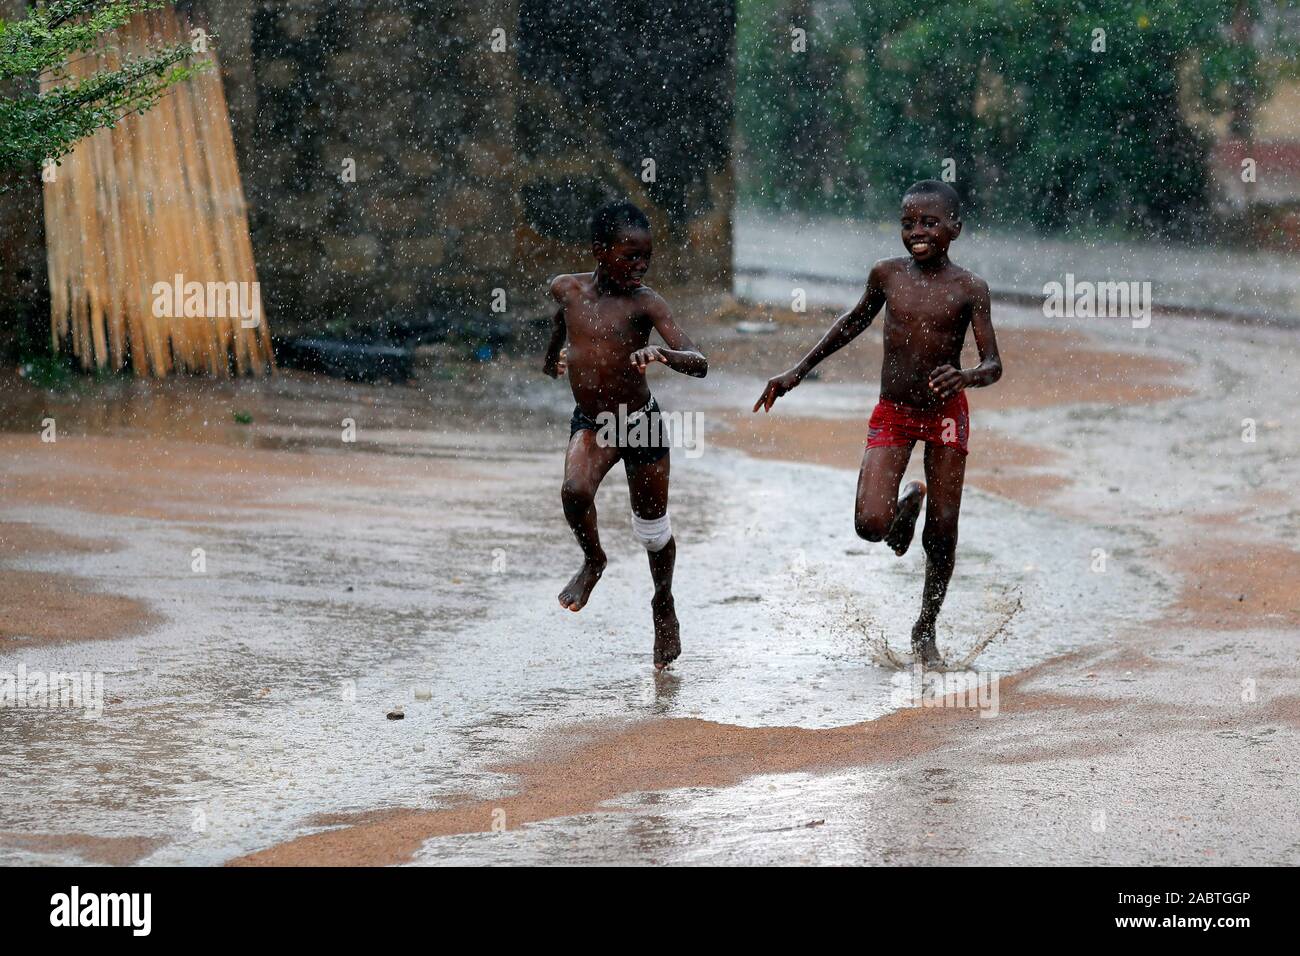 Regenzeit in einem afrikanischen Dorf. Jungen laufen unter der regen Togo. Stockfoto